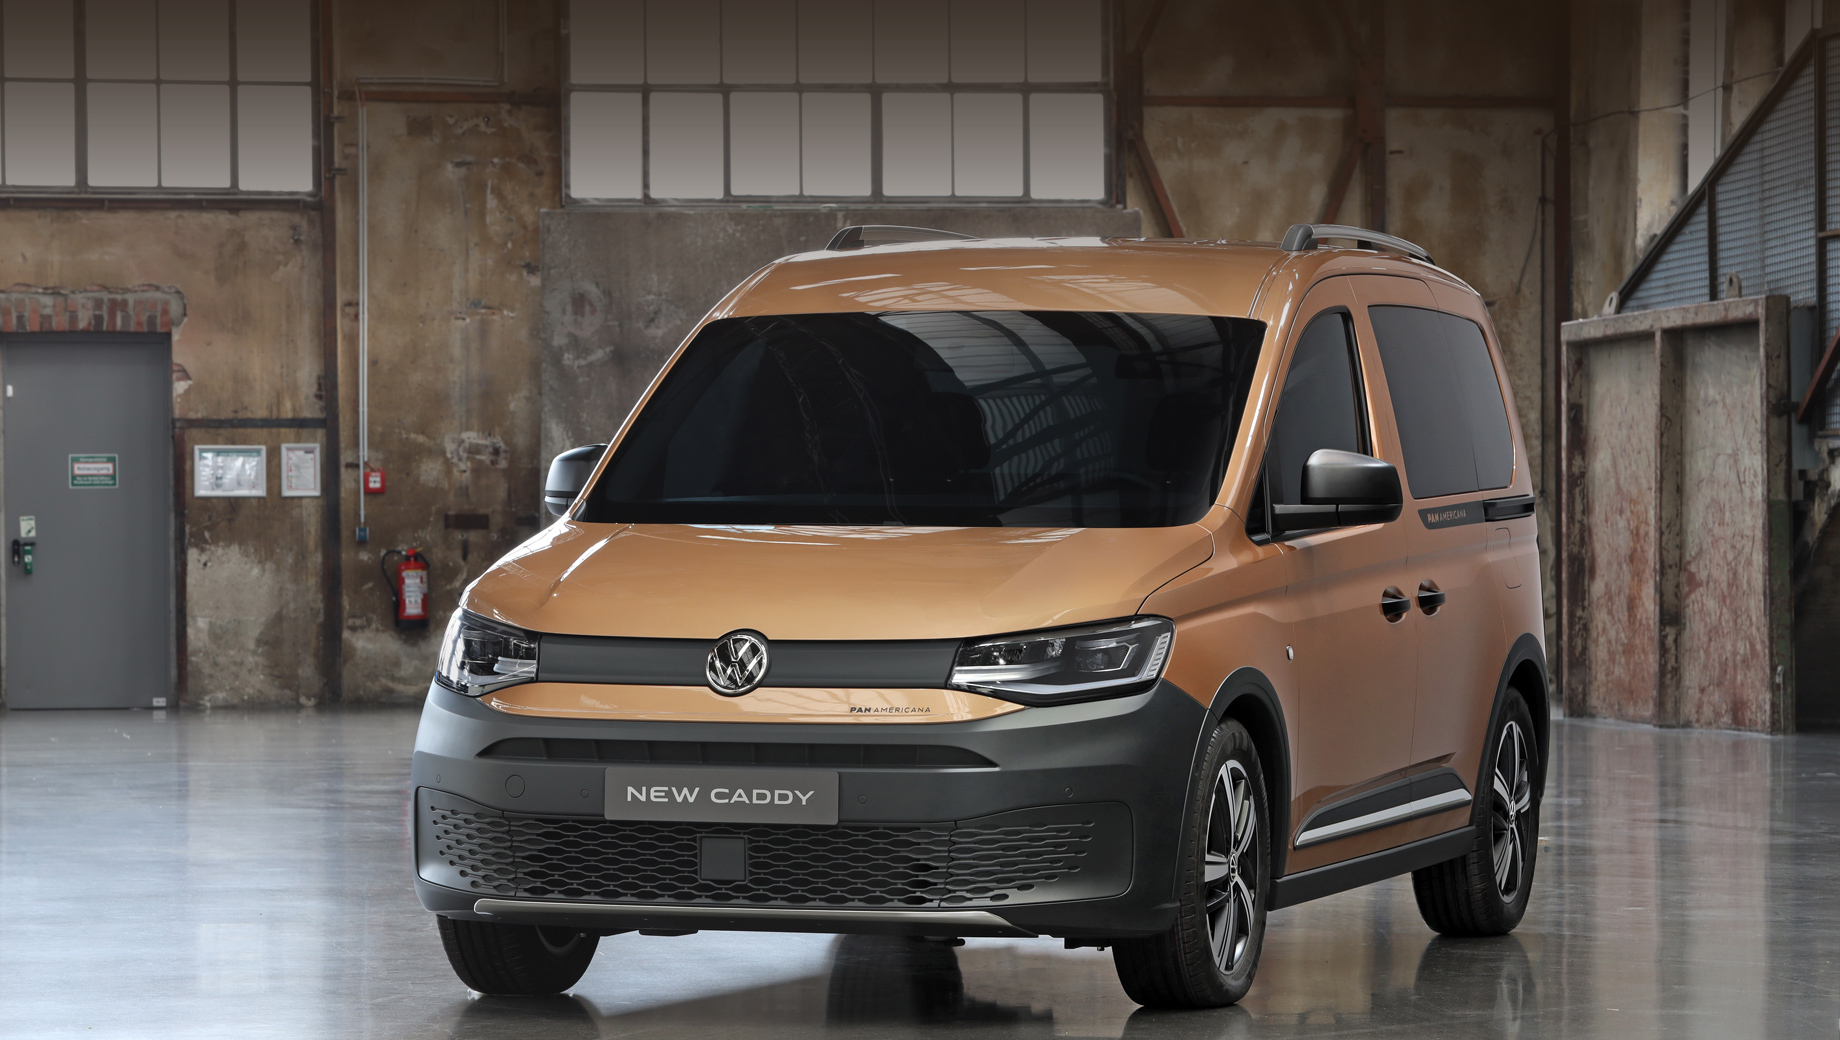 Volkswagen caddy,Volkswagen caddy panamericana. Автомобиль в такой модификации будет выпускаться только на основе Caddy со стандартной базой, но зато в пассажирской и грузовой версиях.